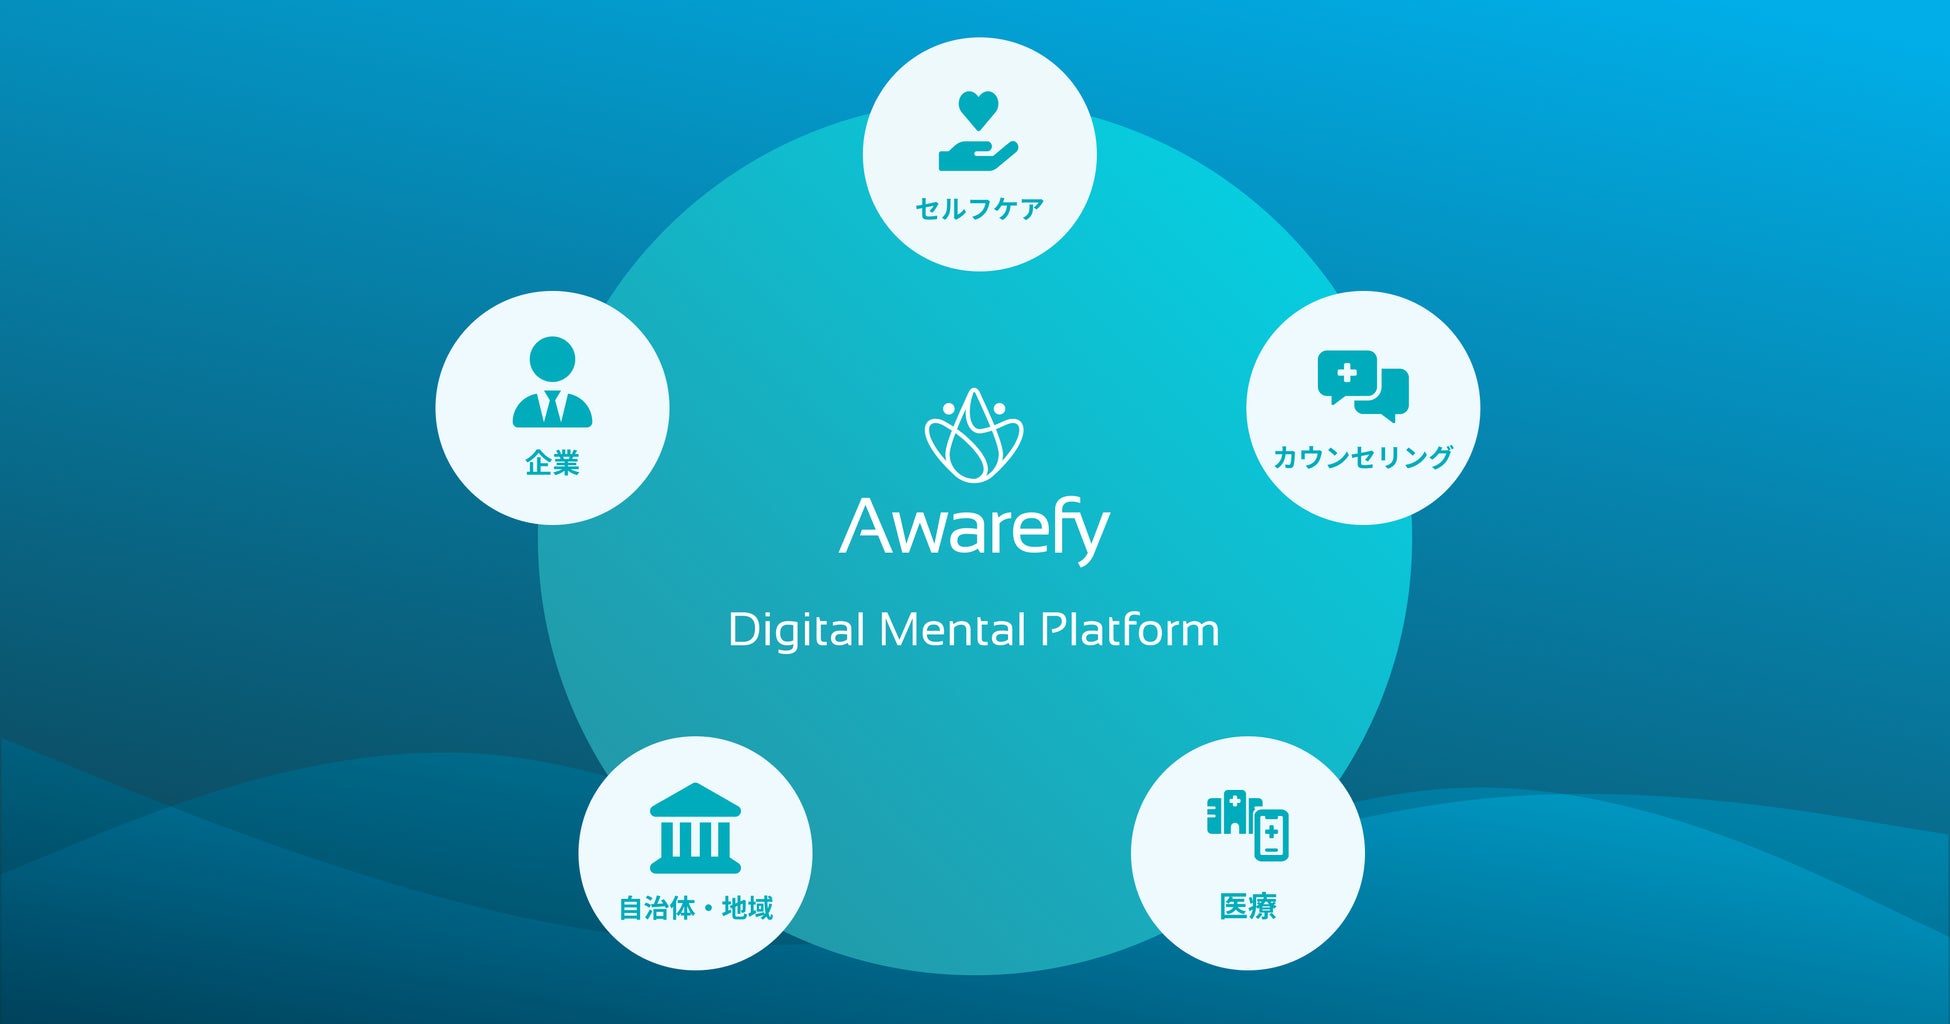 心の健康を支えるデジタル・メンタル・プラットフォーム「Awarefy」、約2.2億円の資金調達を実施。AI活用を推進し、いつでも誰でもメンタルケアできる環境をつくる